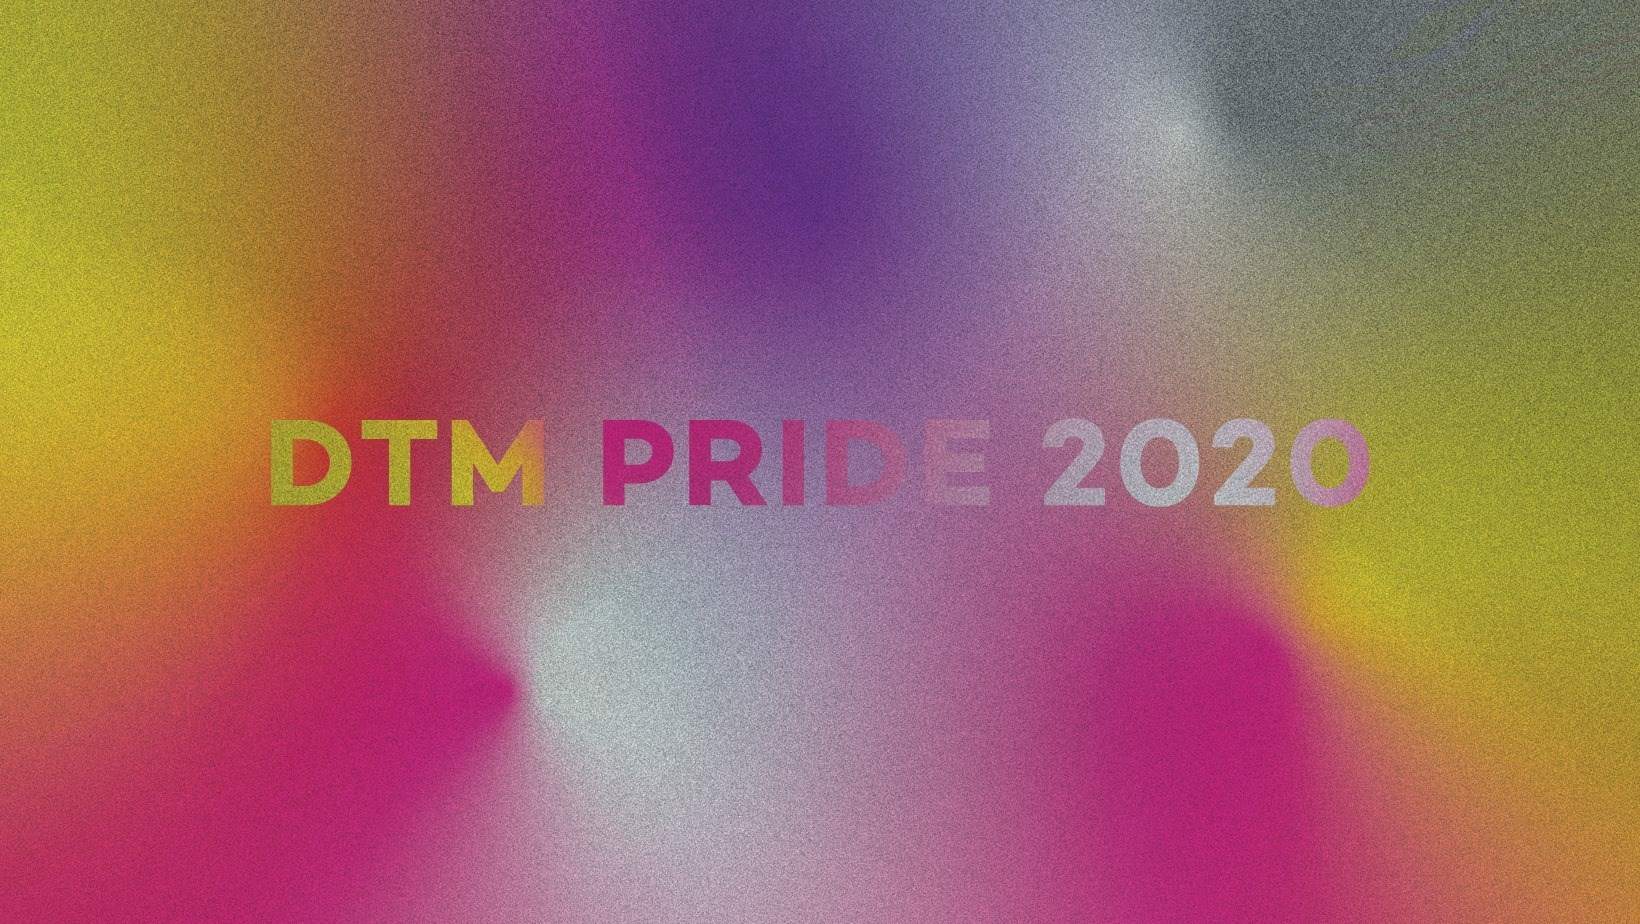 DTM Pride 2020 - Página frontal